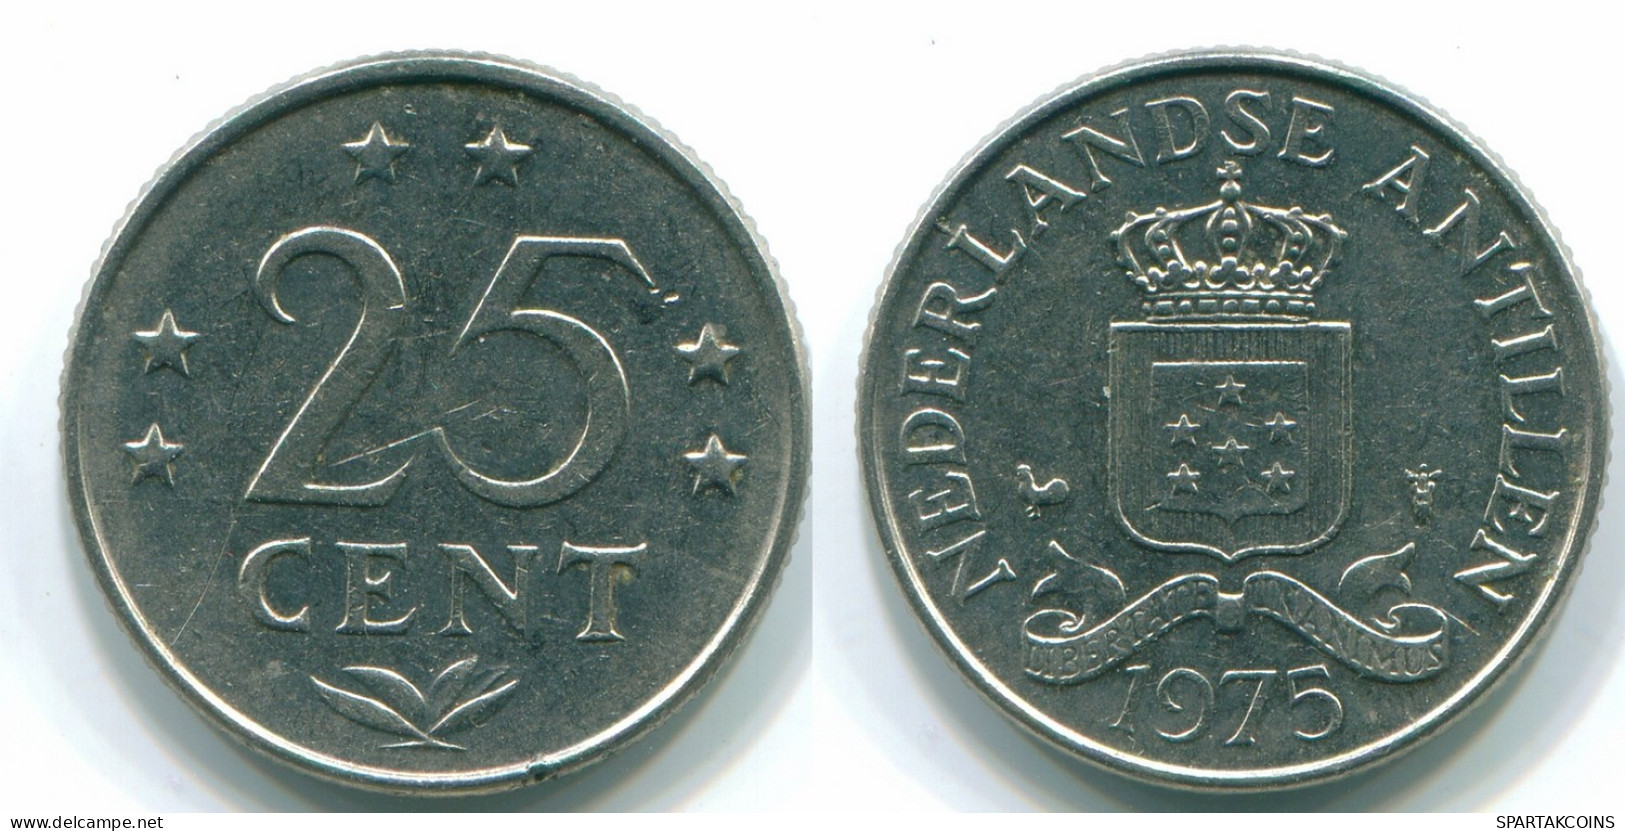 25 CENTS 1975 NETHERLANDS ANTILLES Nickel Colonial Coin #S11609.U.A - Niederländische Antillen